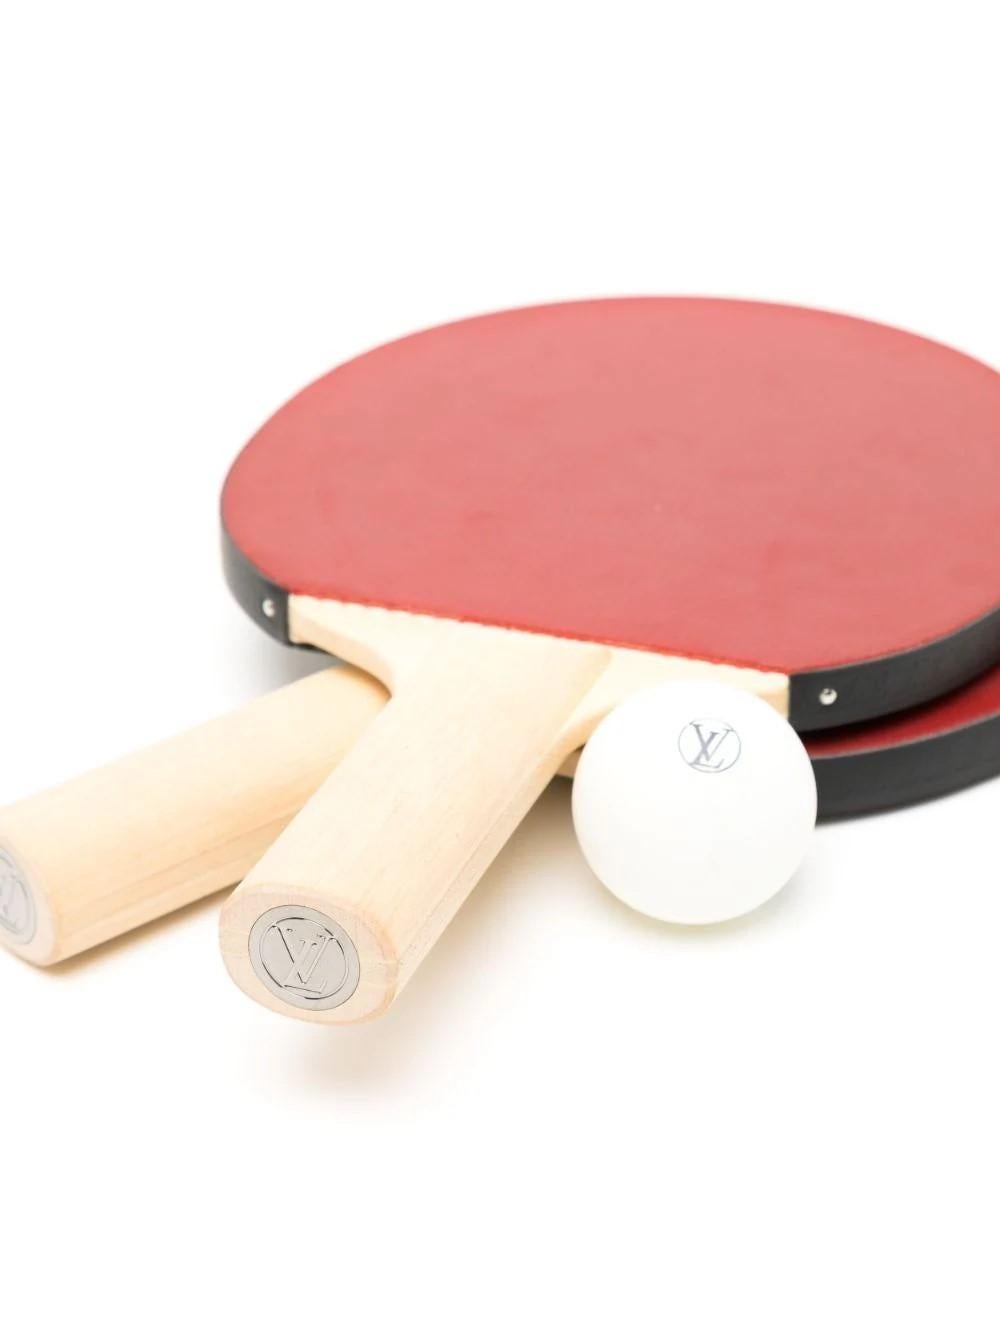 Respectez les règles du jeu avec ce set de ping-pong sophistiqué de la Collection Eclipse de James Monogram. Cet ensemble portable comprend deux pagaies de ping-pong conçues par des professionnels, deux balles réglementaires dans un support